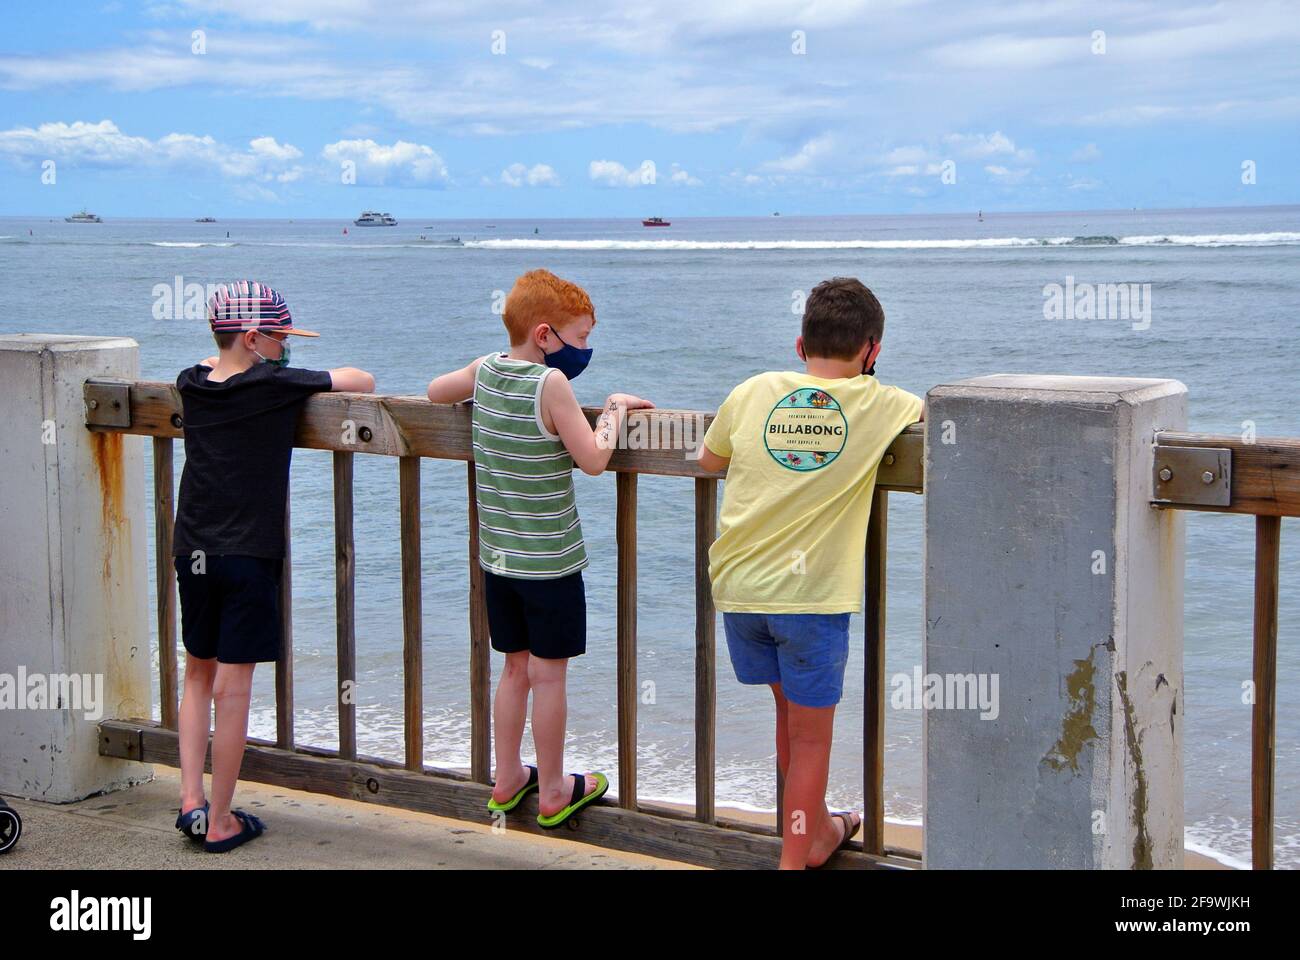 Los turistas de hawaii disfrutan de las vistas del océano pacífico desde la playa Kaanapali En la pequeña ciudad histórica de Lahaina Maui usa Foto de stock